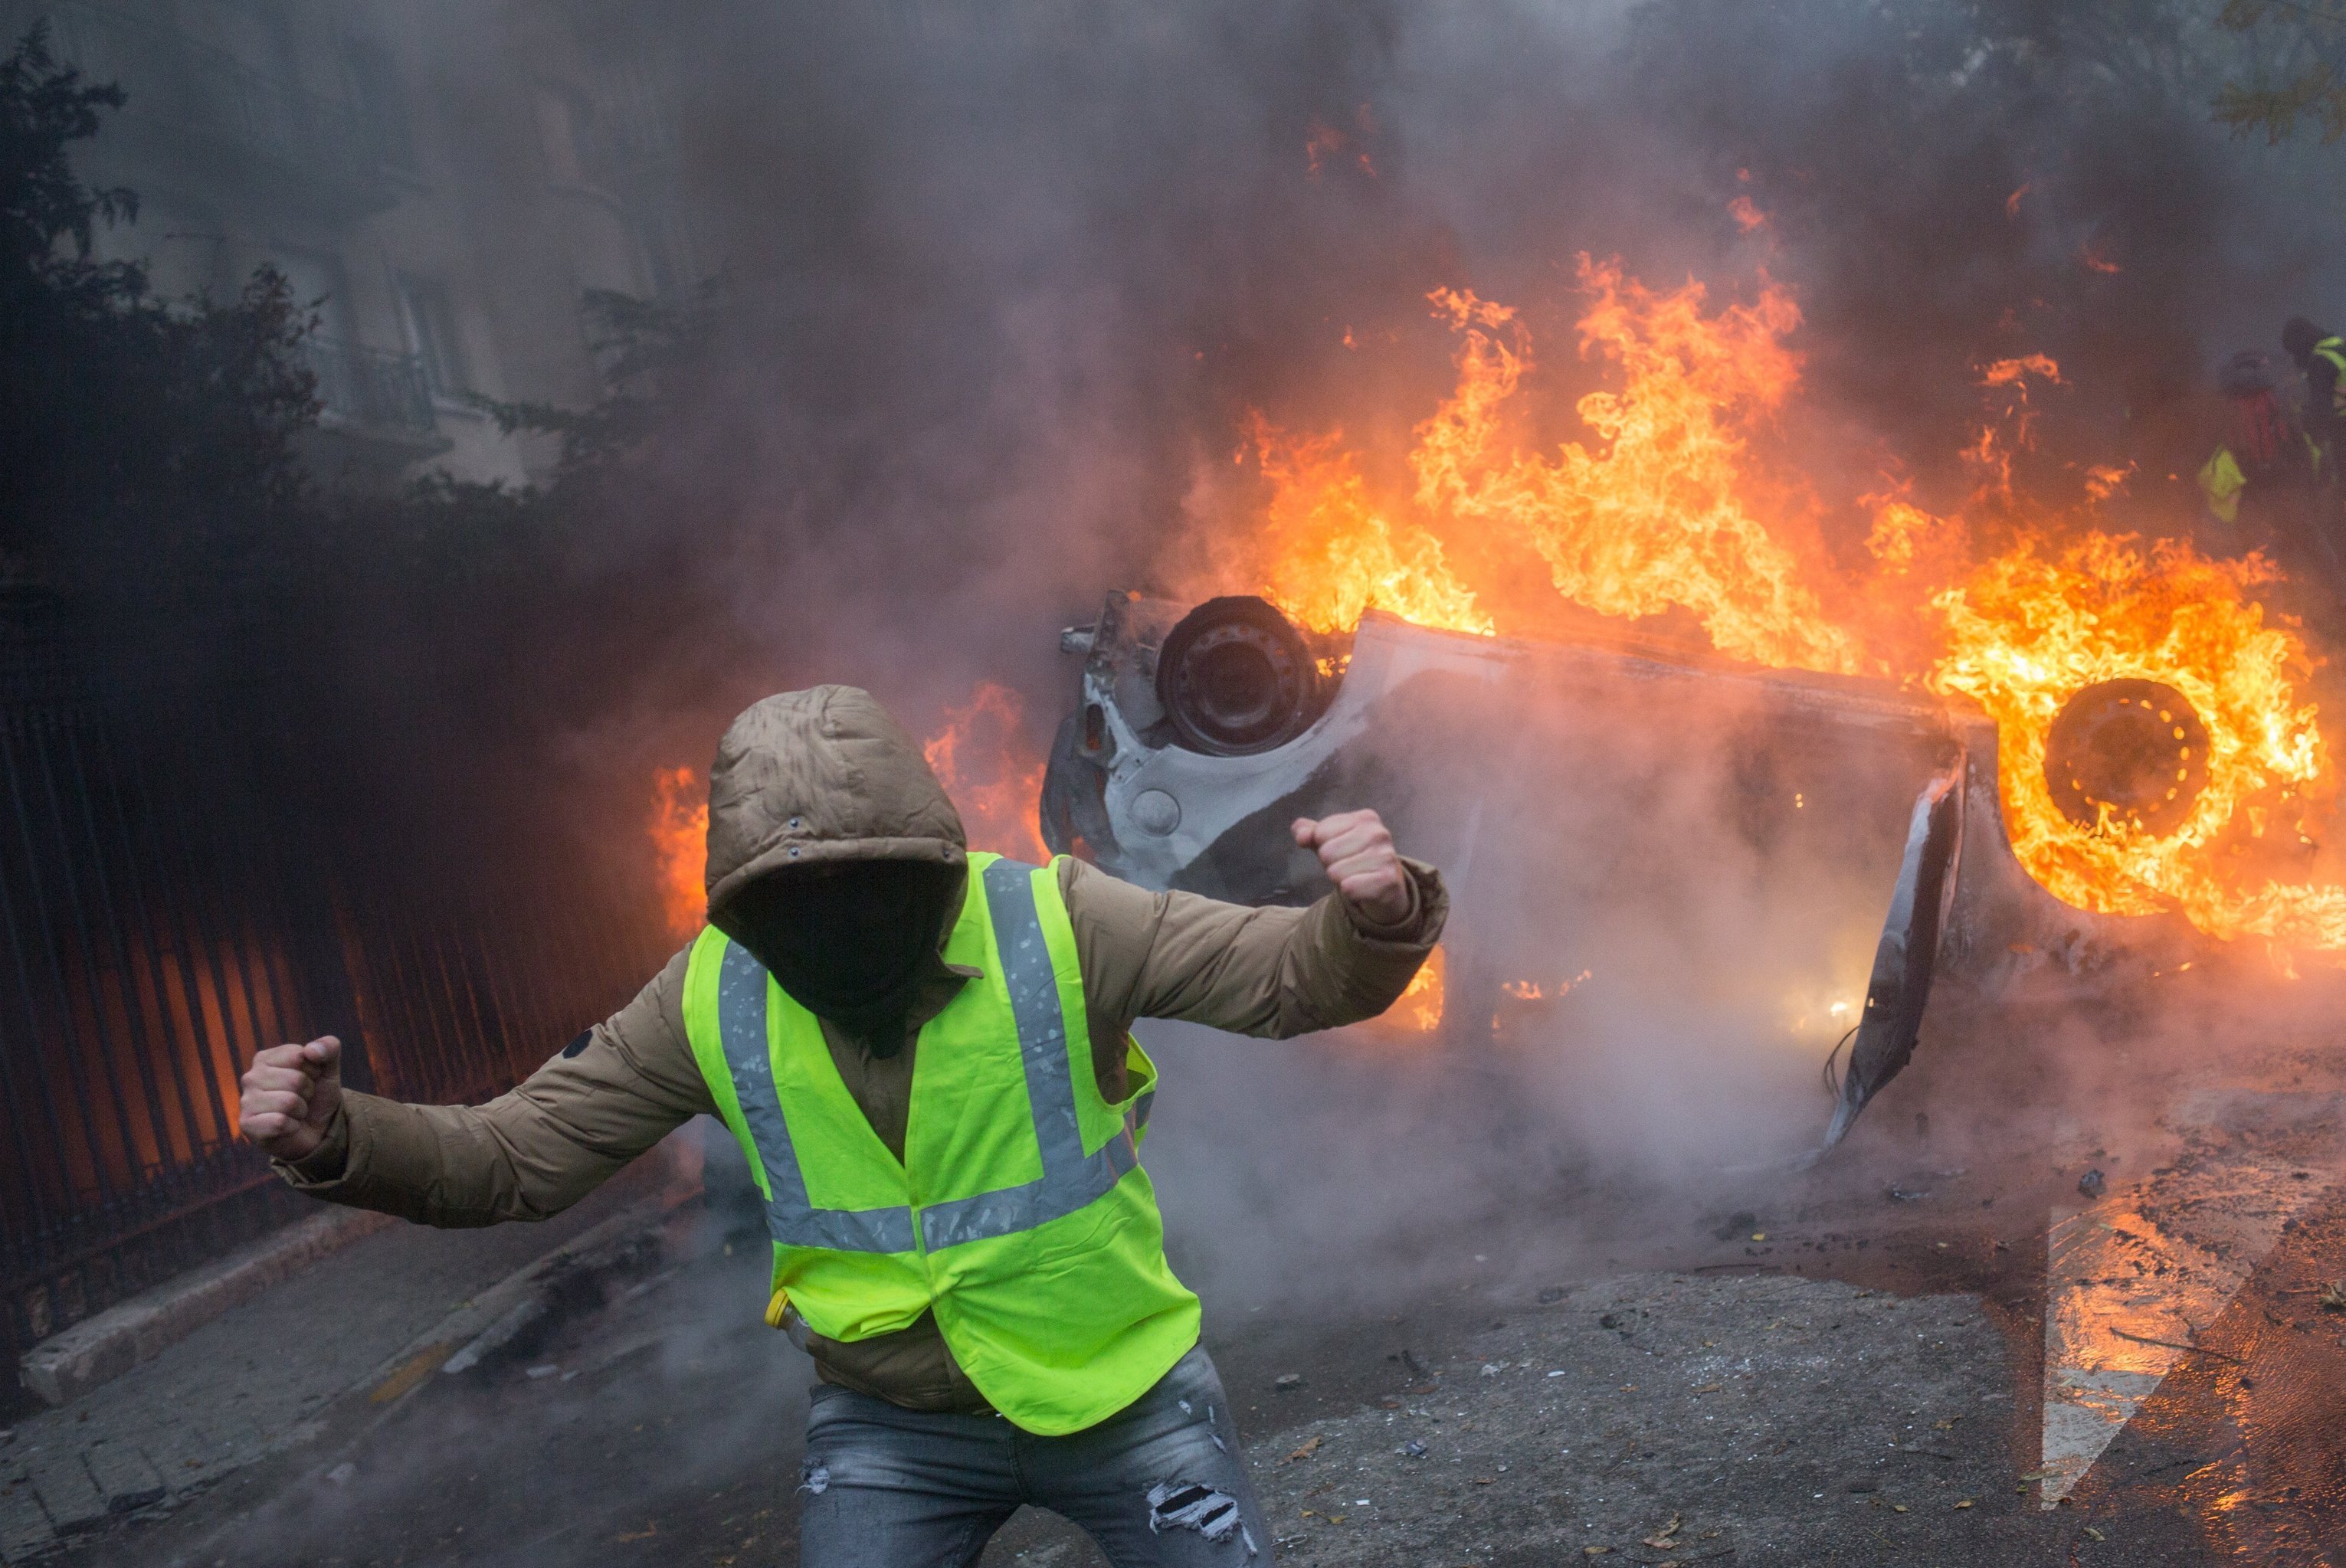 Автомобиль, горящий во время протестной акции движения автомобилистов "желтые жилеты", выступавшего с требованием снижения налогов на топливо, в районе Триумфальной арки в Париже.